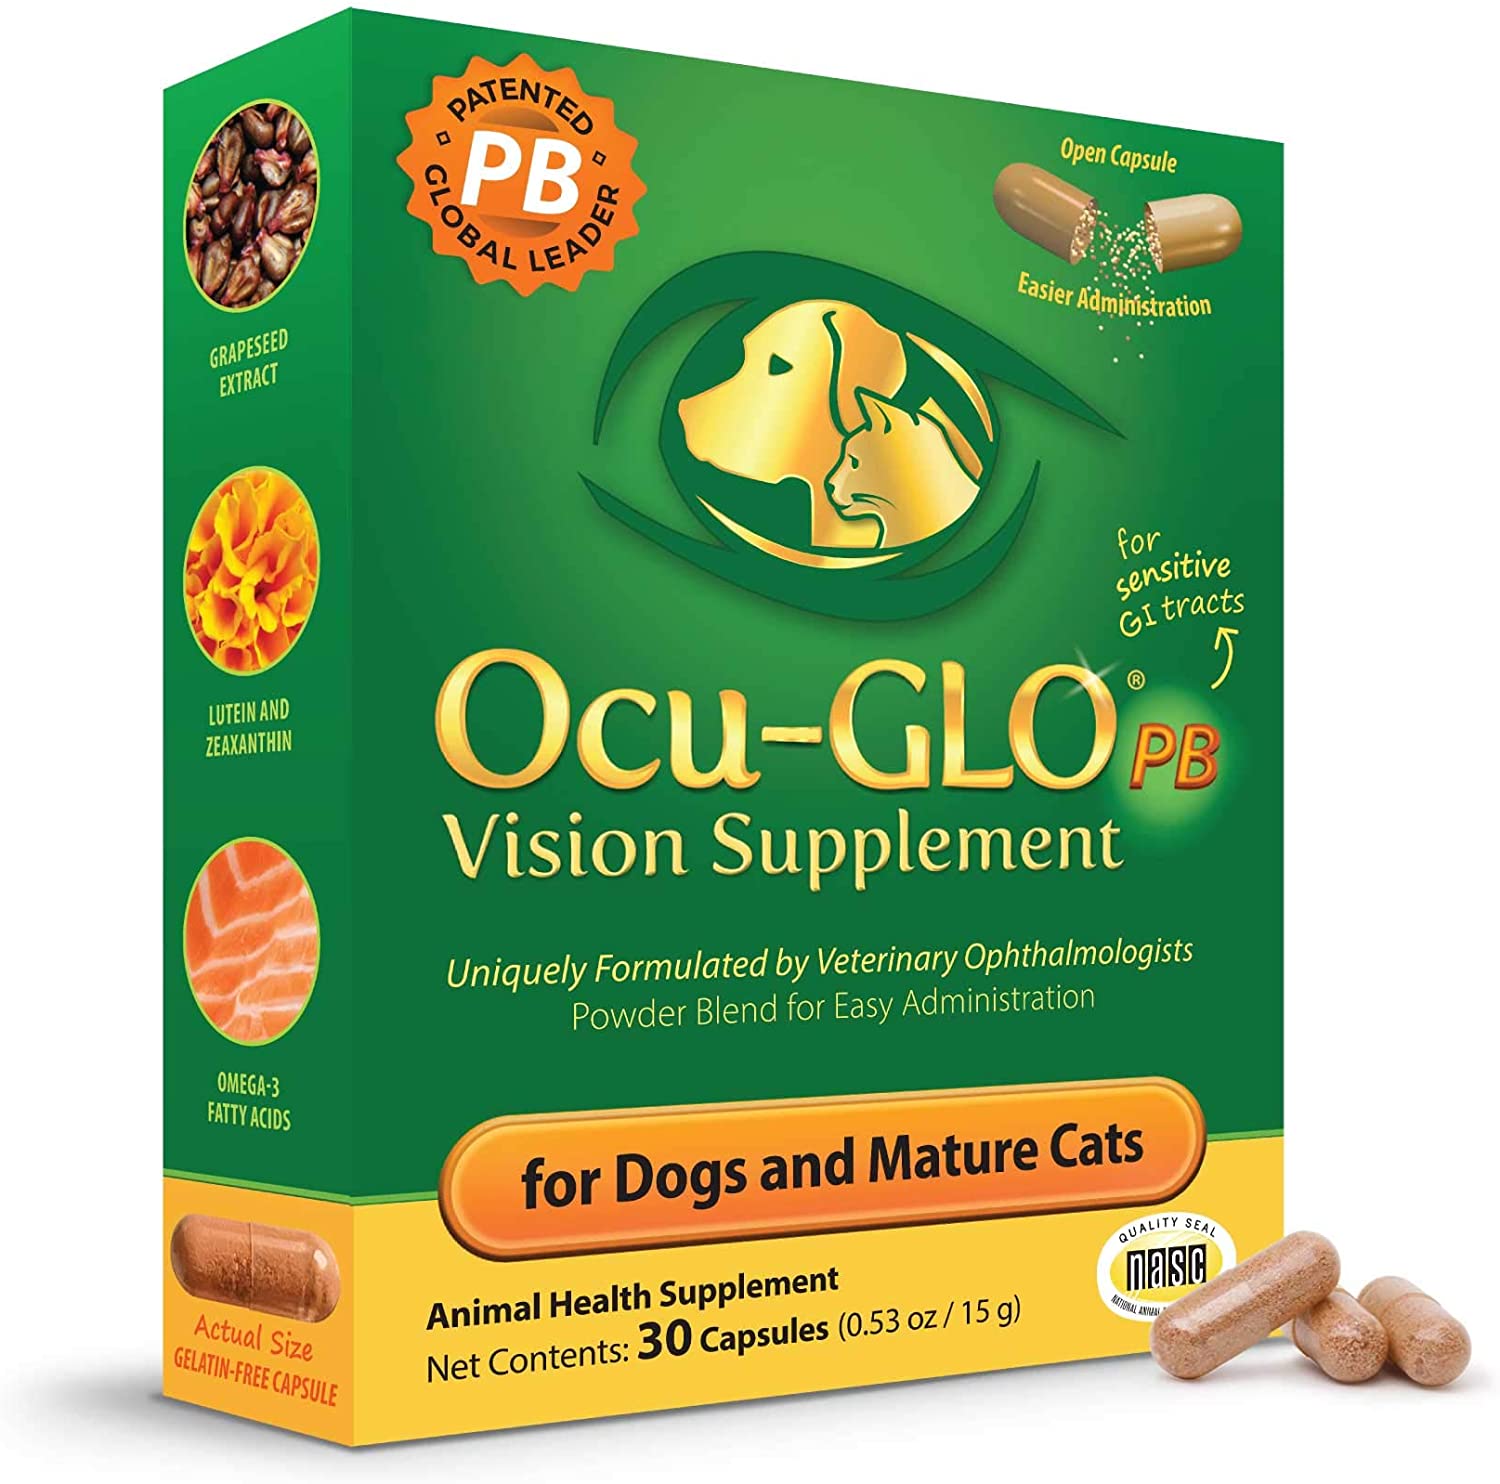 Ocu-GLO-PB-Vision-Supplement-Capsules-1